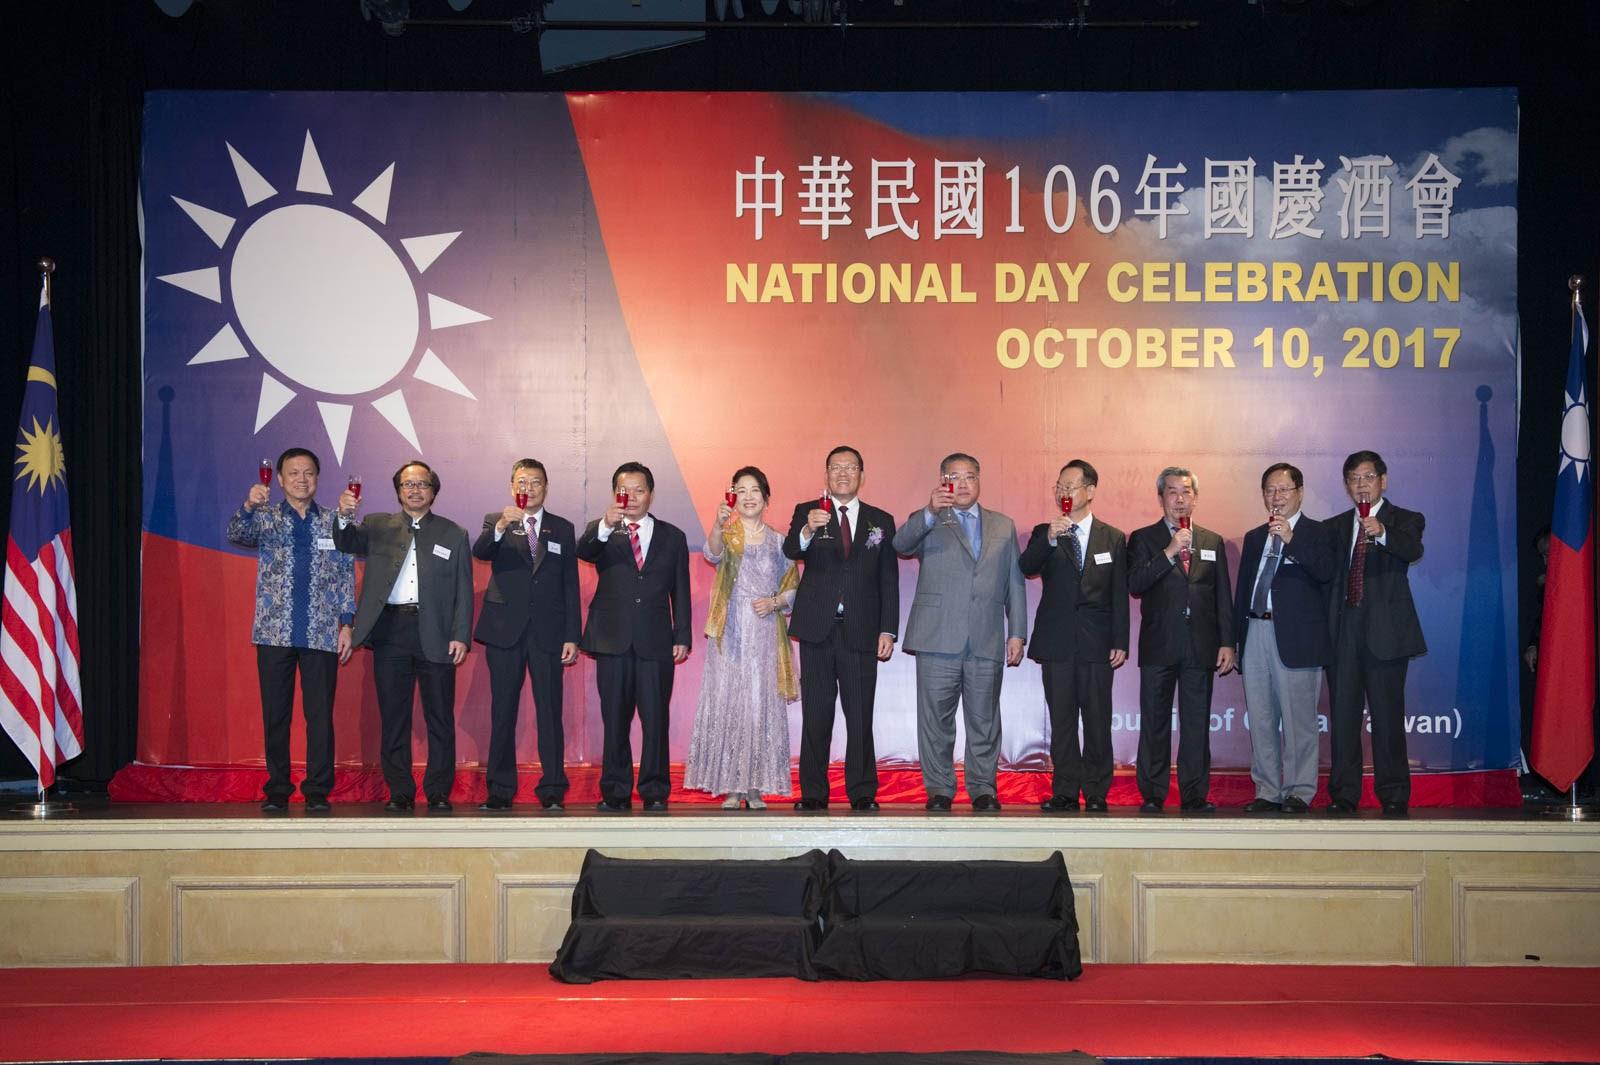  Wakil Chang, James Chi-ping mempengerusikan jamuan Hari Kebangsaan yang ke-106 dan menjemput ali politik tempatan dan ahli perniagaan dari Taiwan untuk meraikan Hari Kebangsaan Republik China.